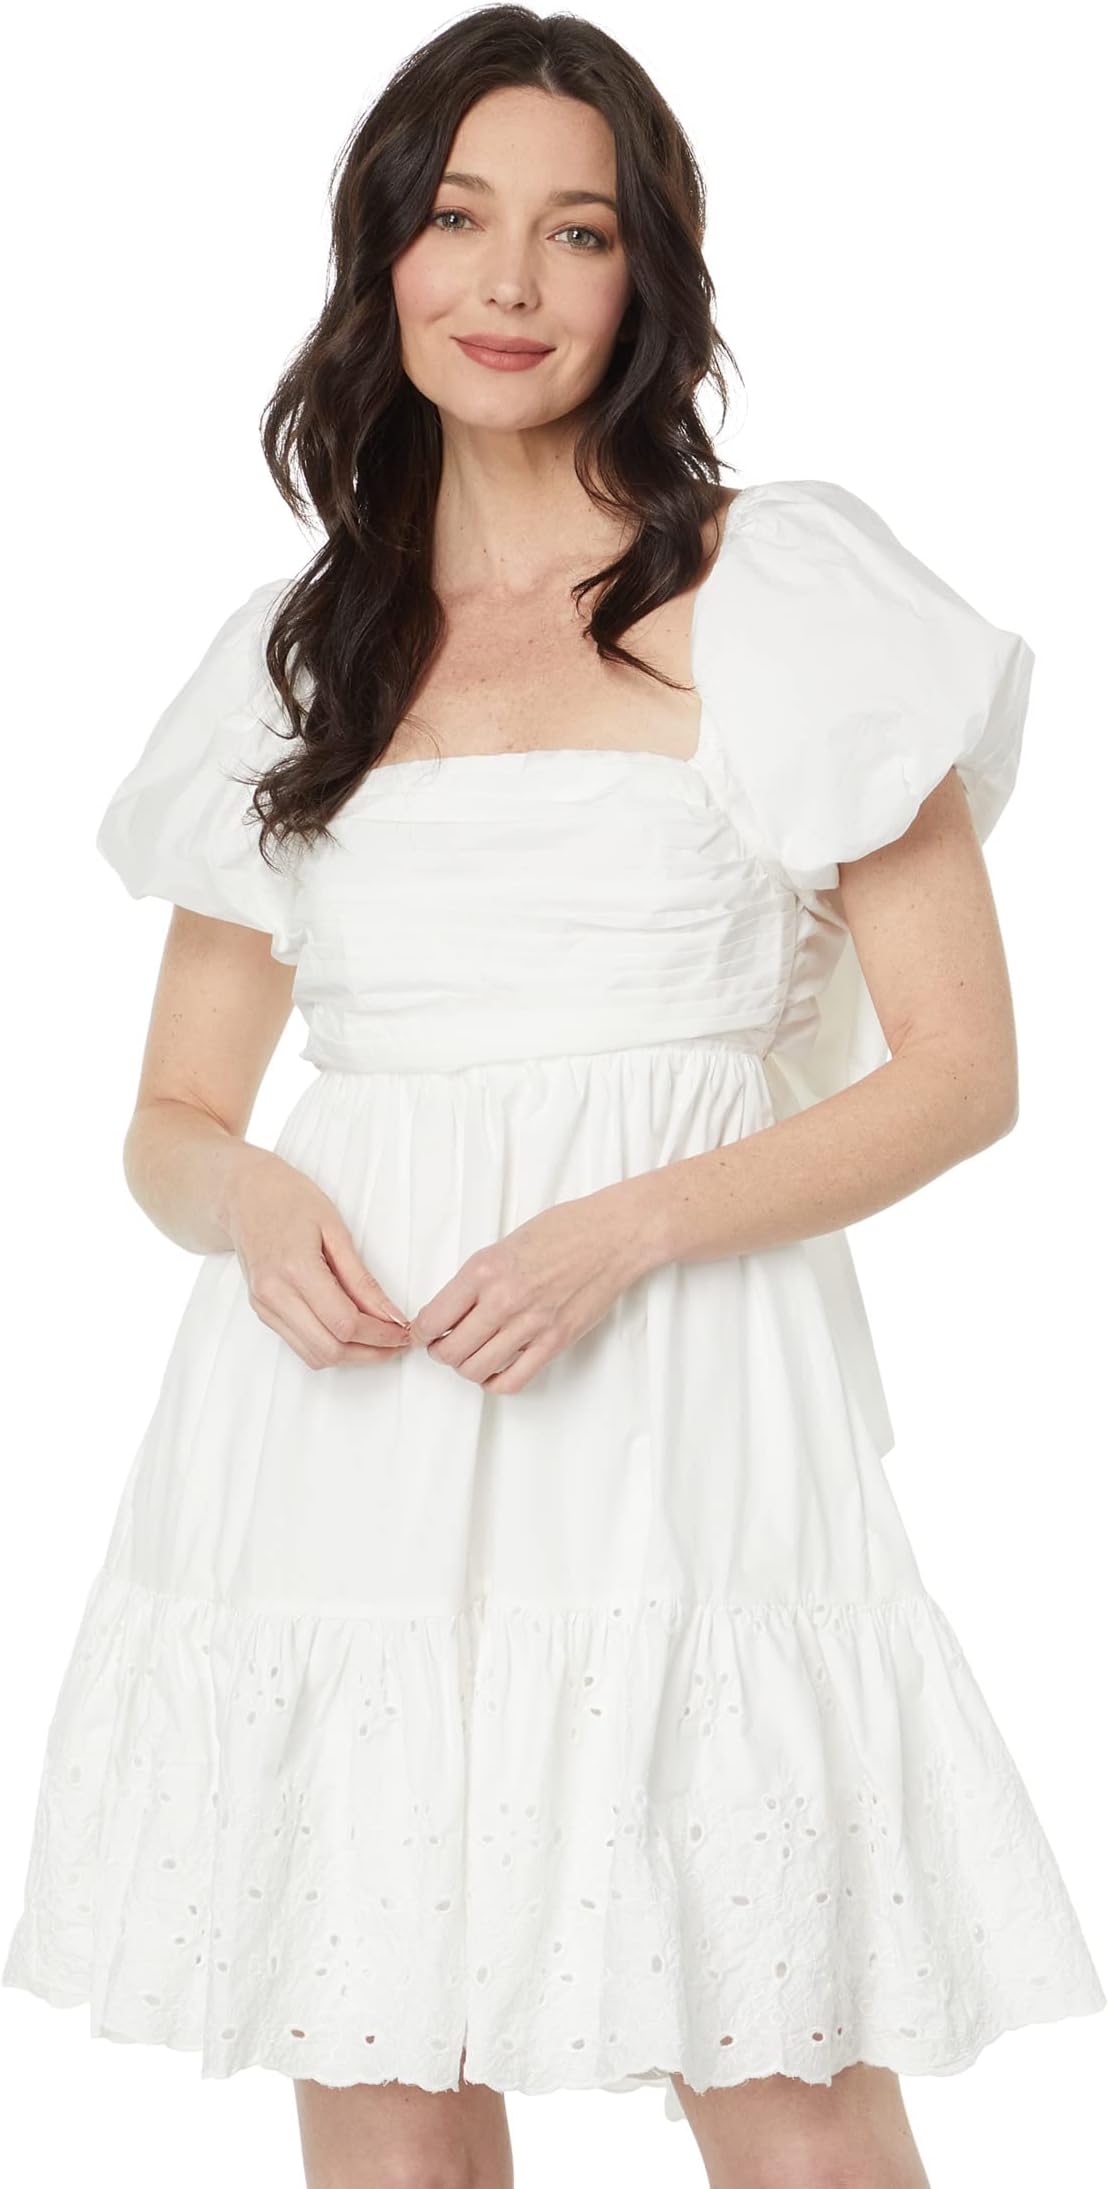 Мини-платье Джульетта en saison, цвет Off-White мини платье arabella en saison цвет navy blush